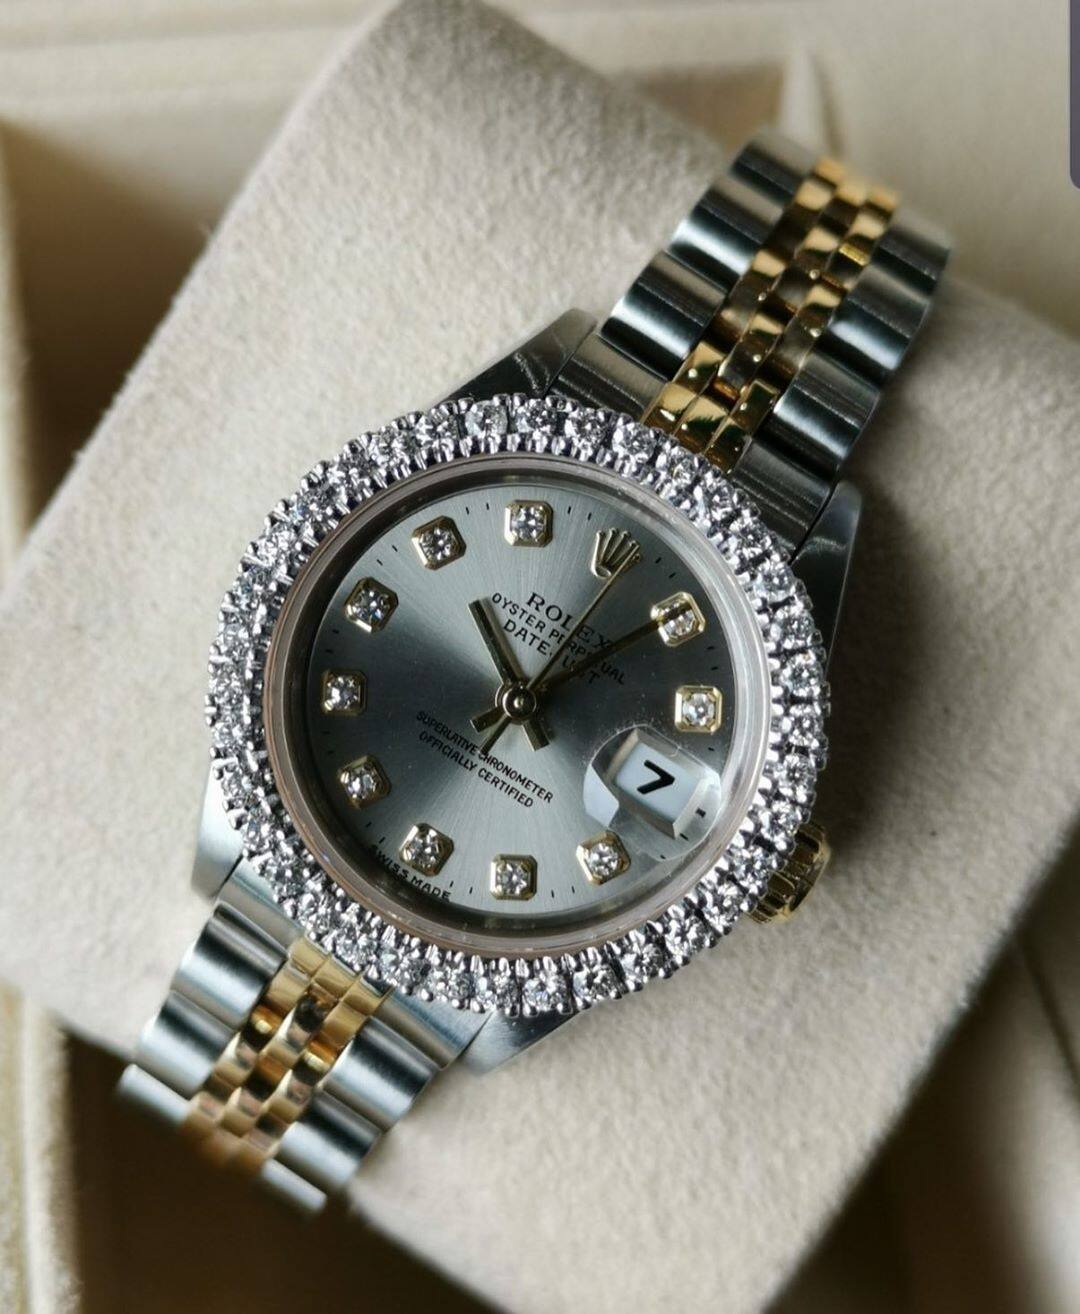 นาฬิกาข้อมือRolex Oyster Perpetual Datejust men’s ref.69173 สินค้าพร้อมกล้องบรนด์ ประกัน1ปี